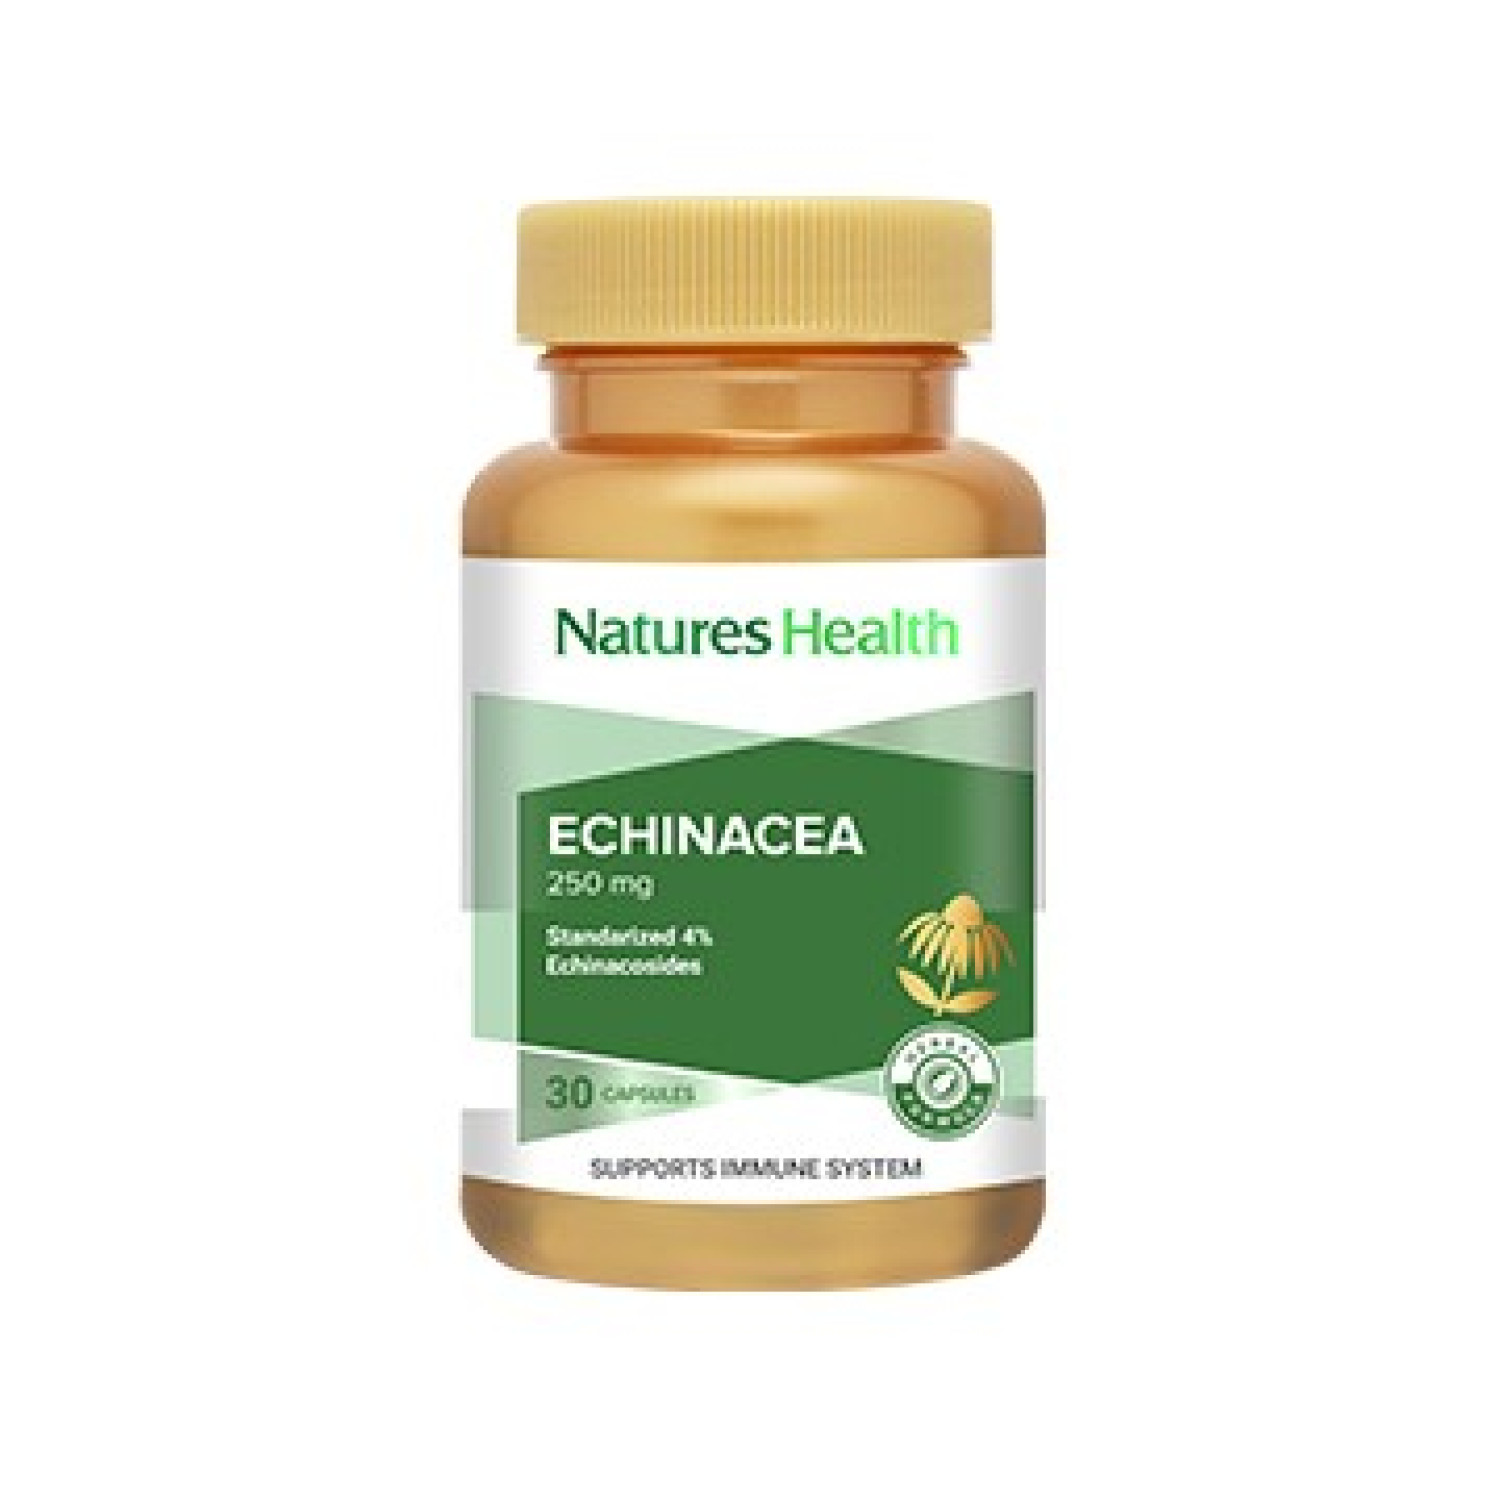 natures-health-echinacea-30-capsules-665d6ed5c0745.jpeg